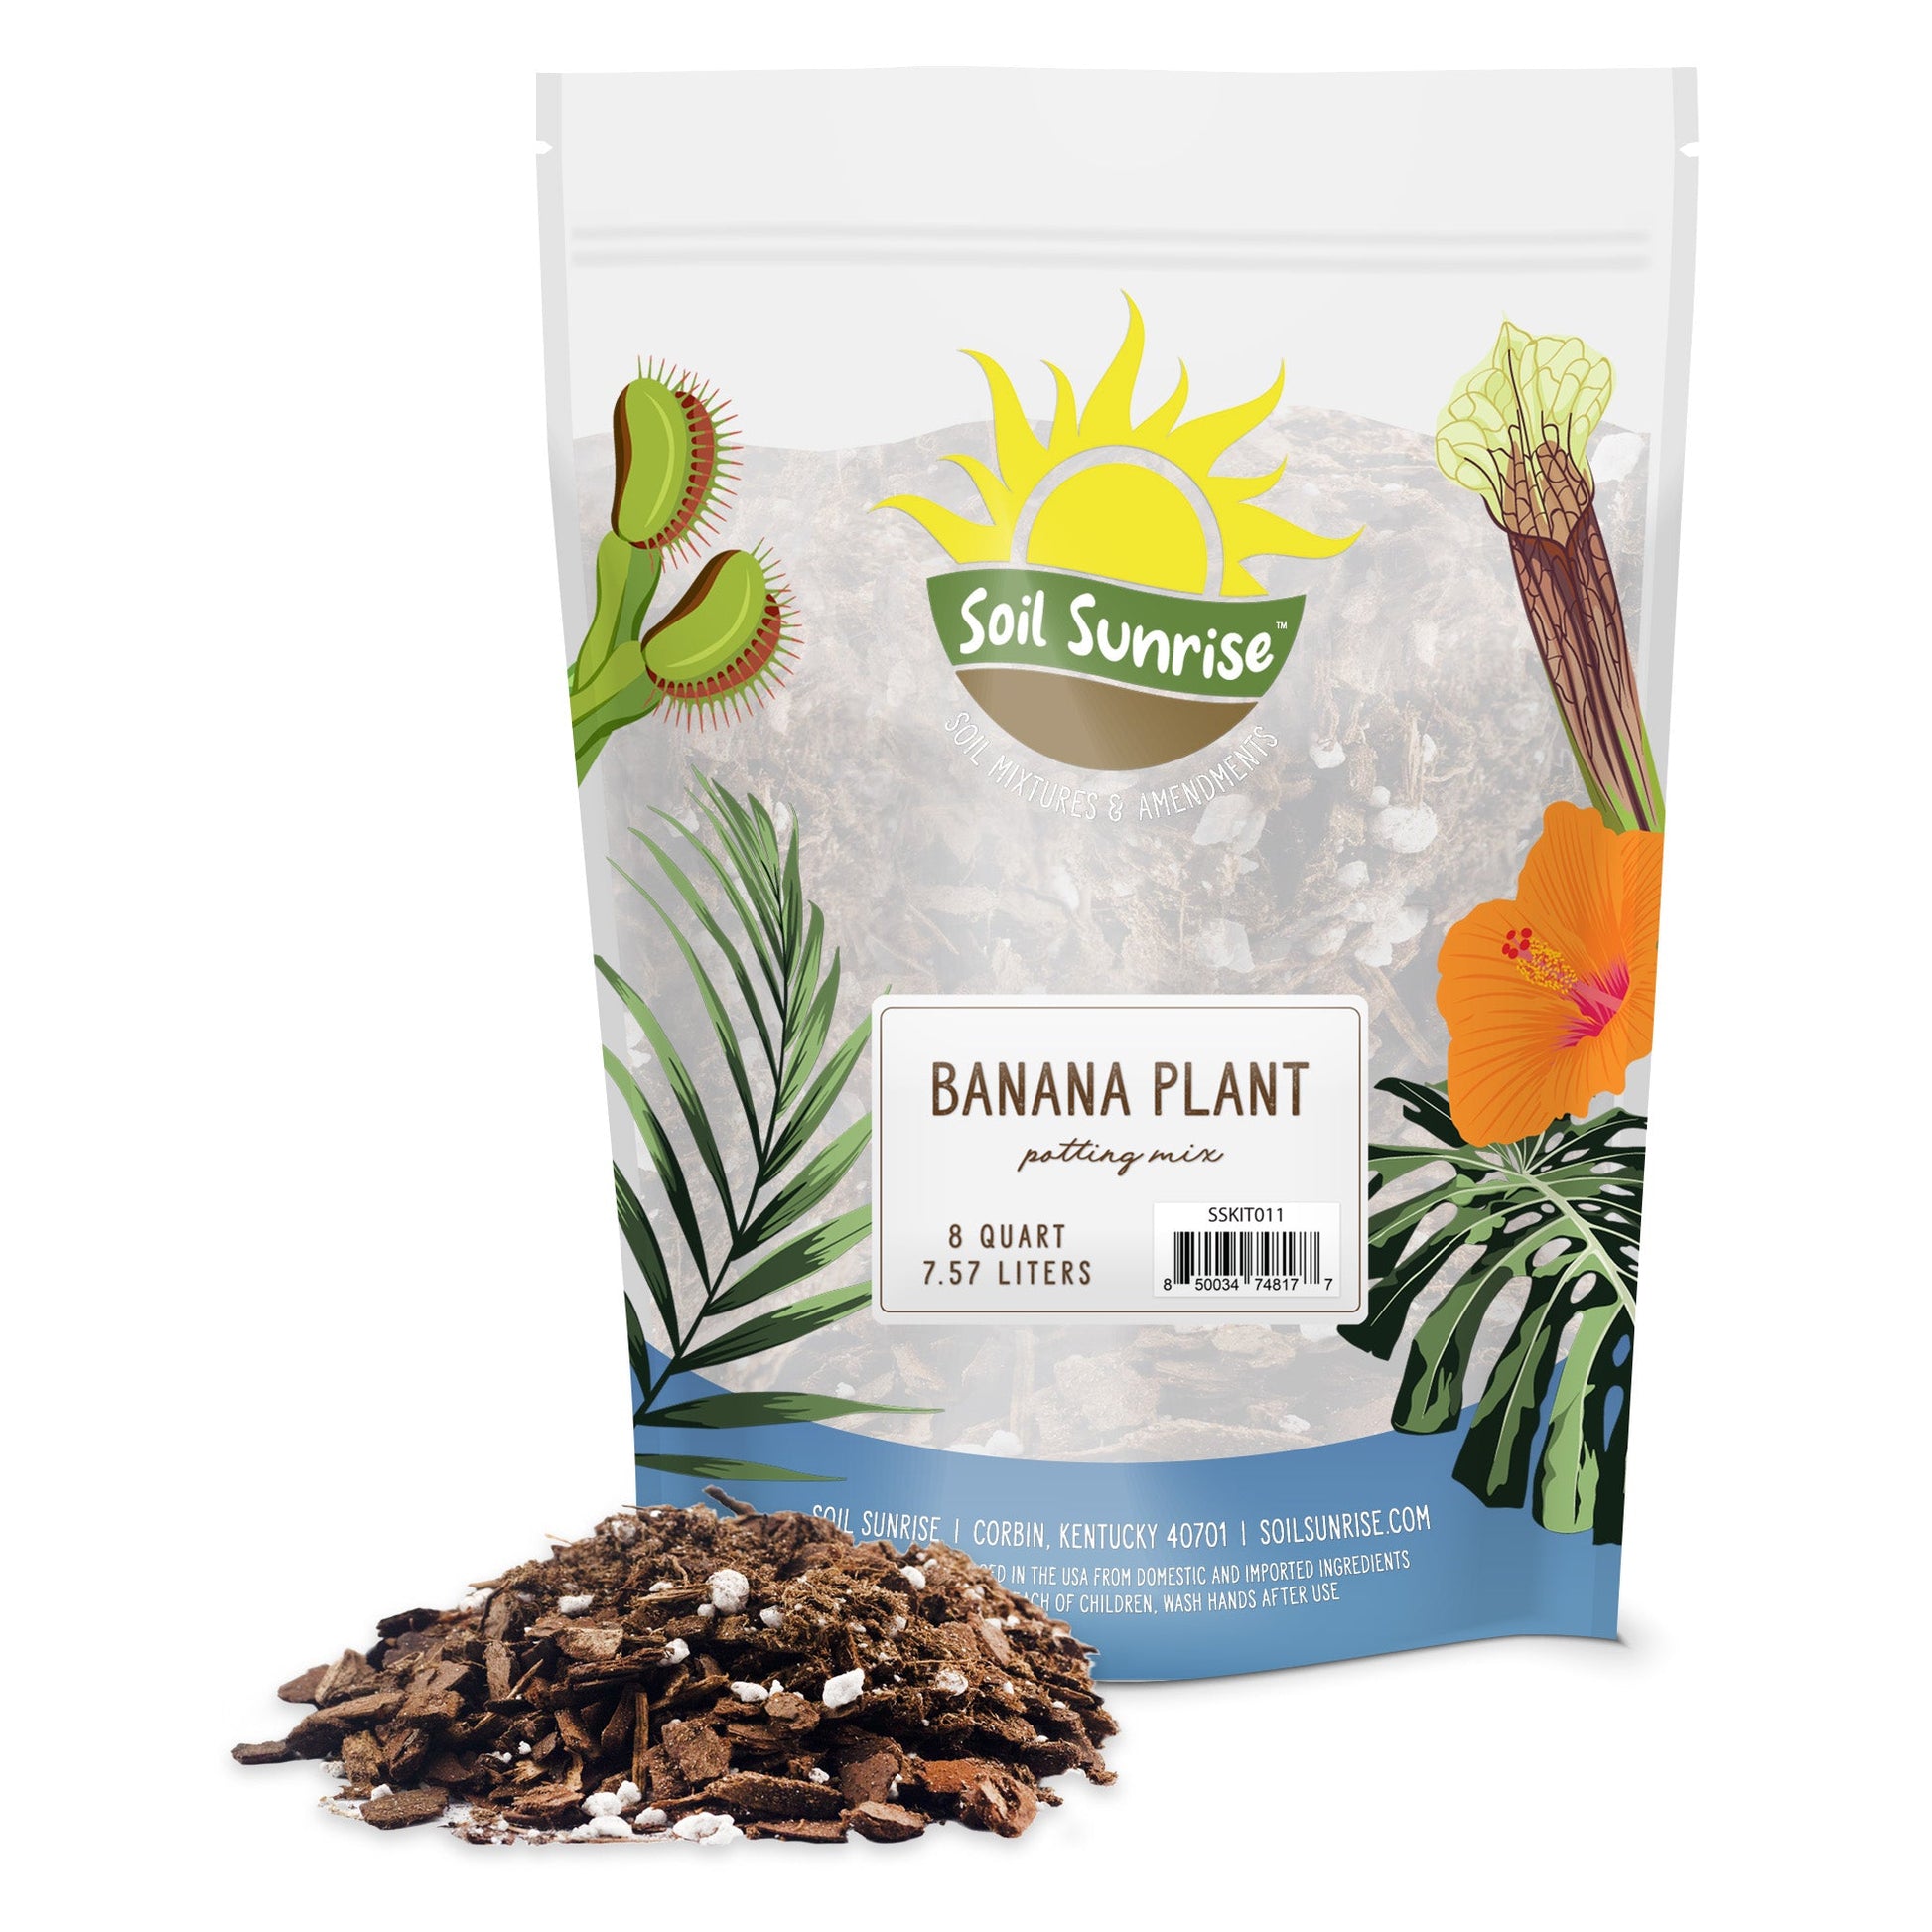 Banana Tree Potting Soil Mix (12 Quarts) - SSKIT264